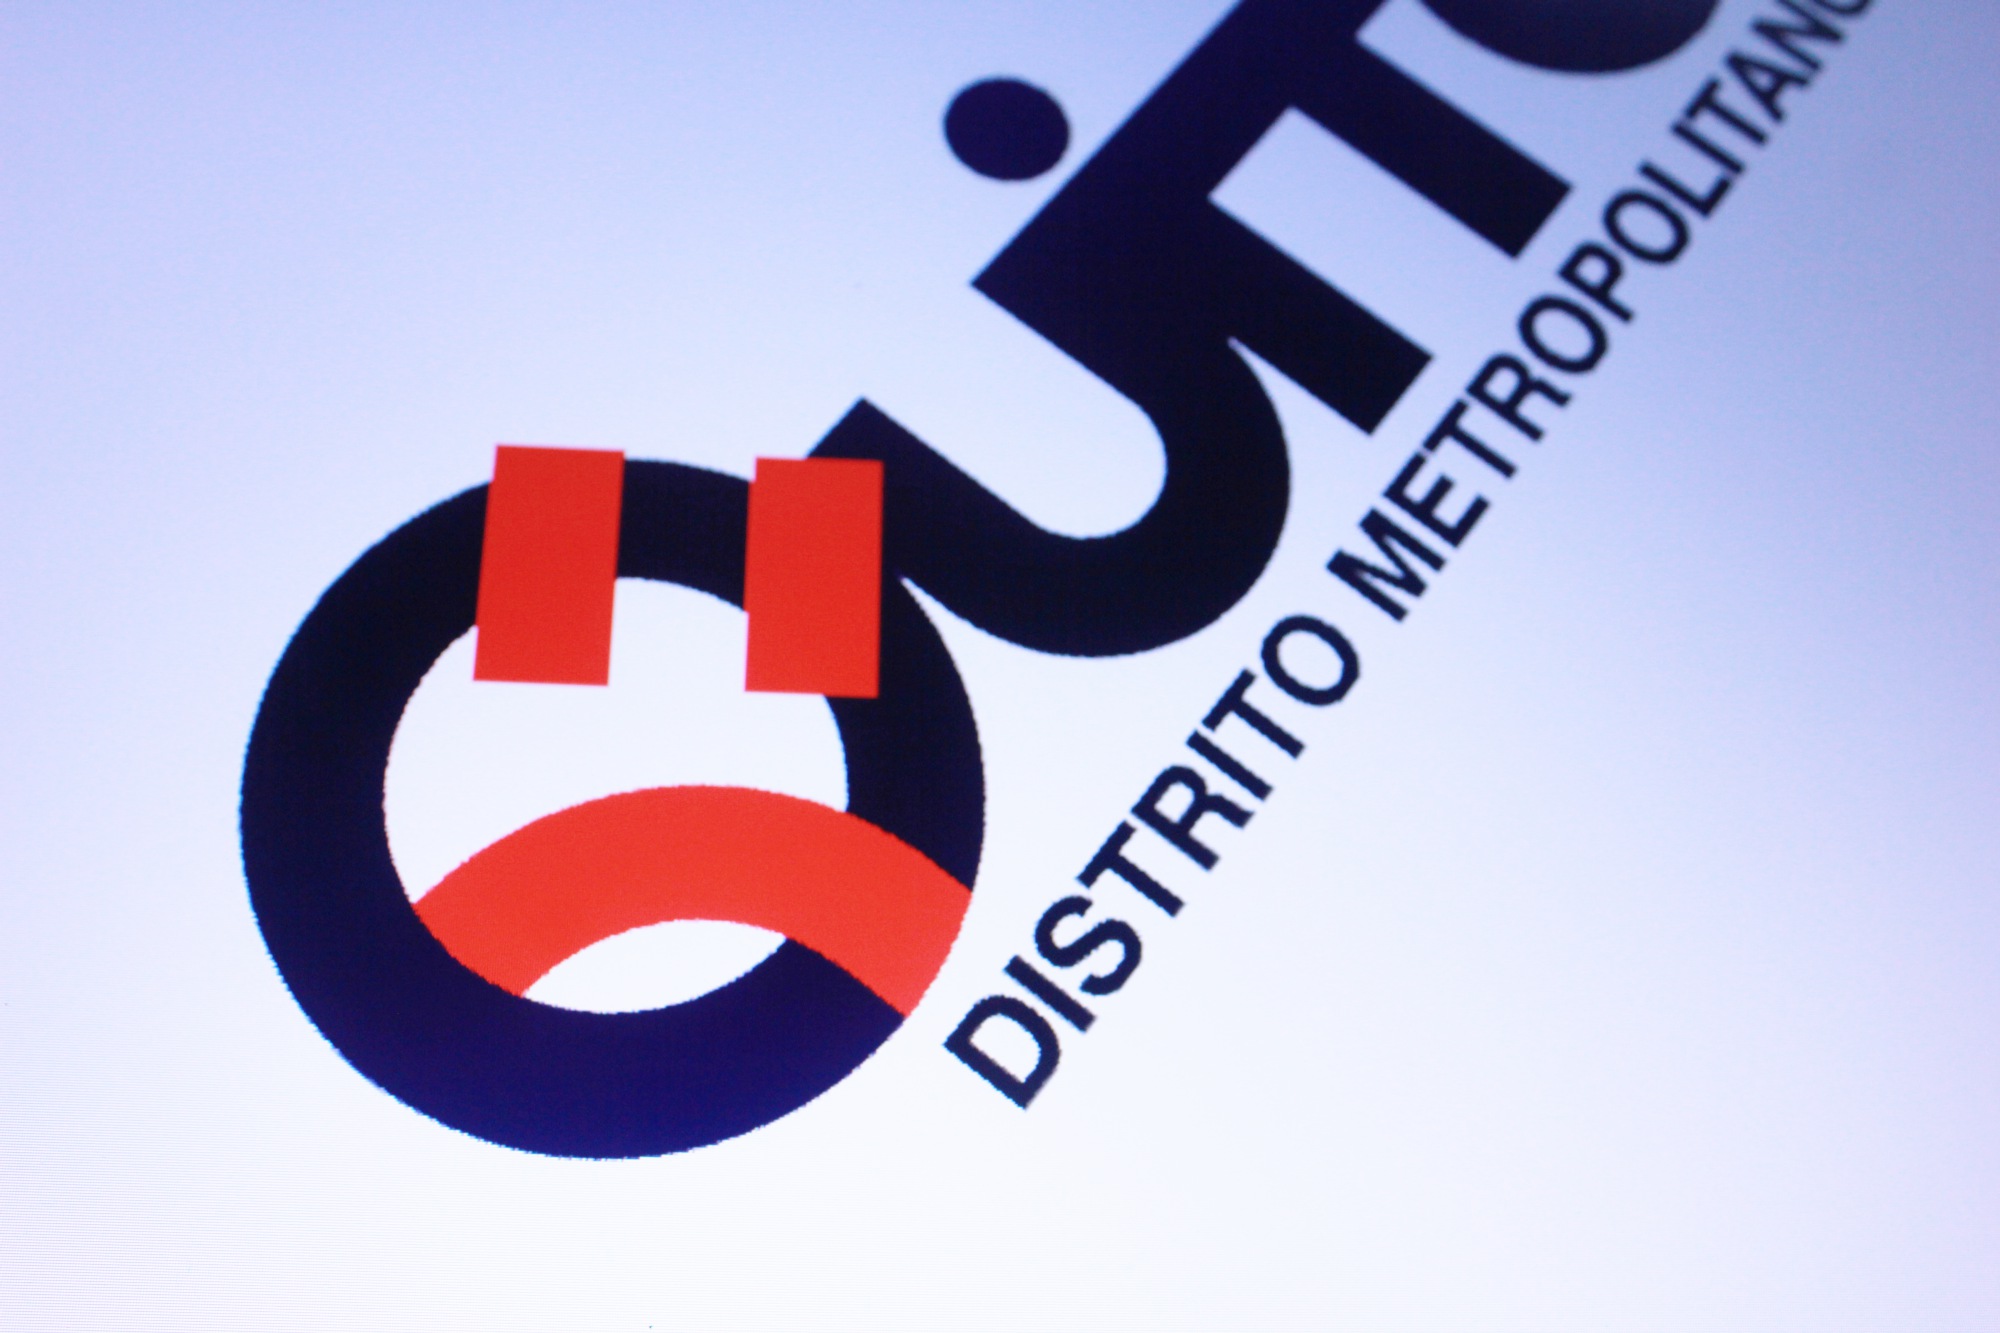 Letra "Q" denuncia haber sido censurada por el nuevo alcalde de Quito